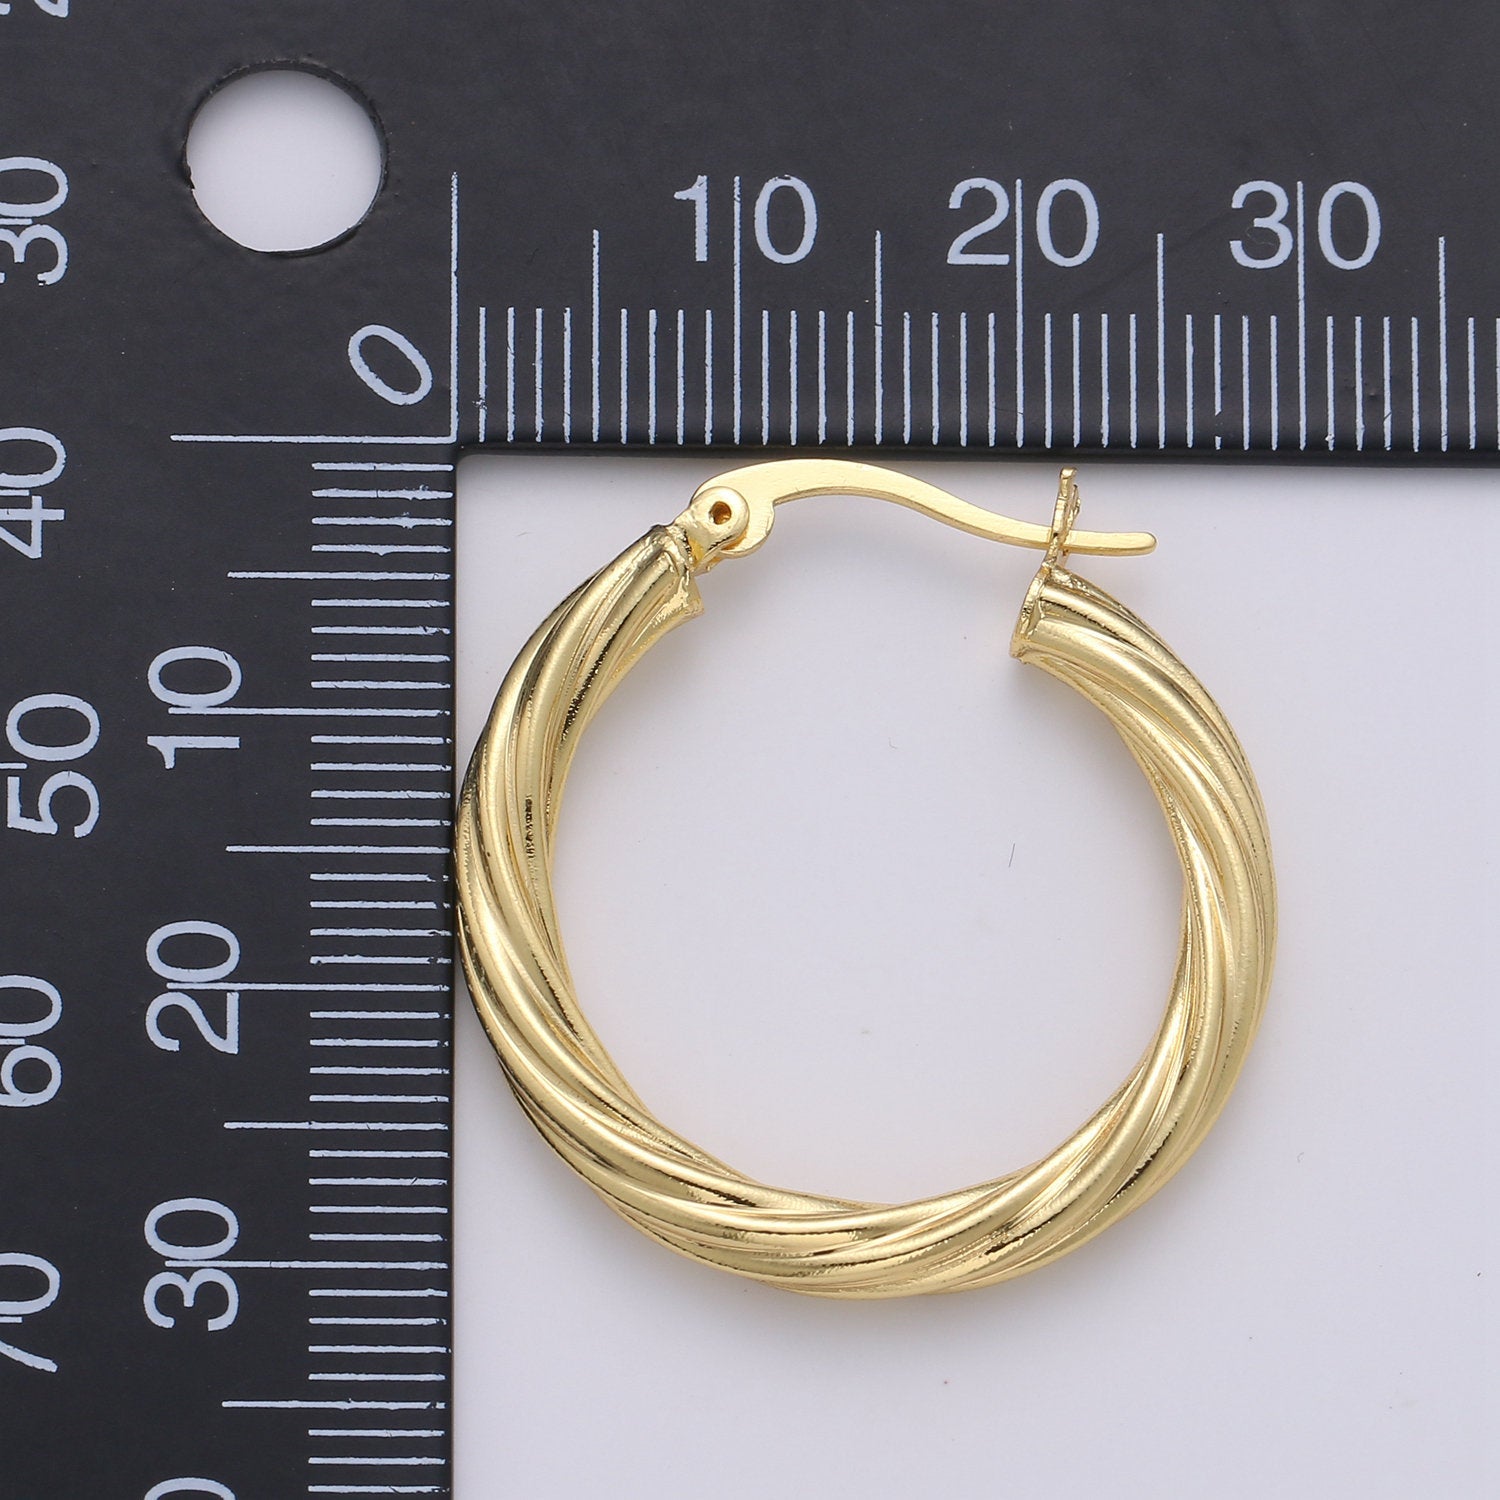 24k Vermeil Gold Earrings, Hoop Earrings, Small Hoop, Circle Rope Texture Earring, Gift for Her, Earrings for Women, Everyday Wear Earrings - DLUXCA